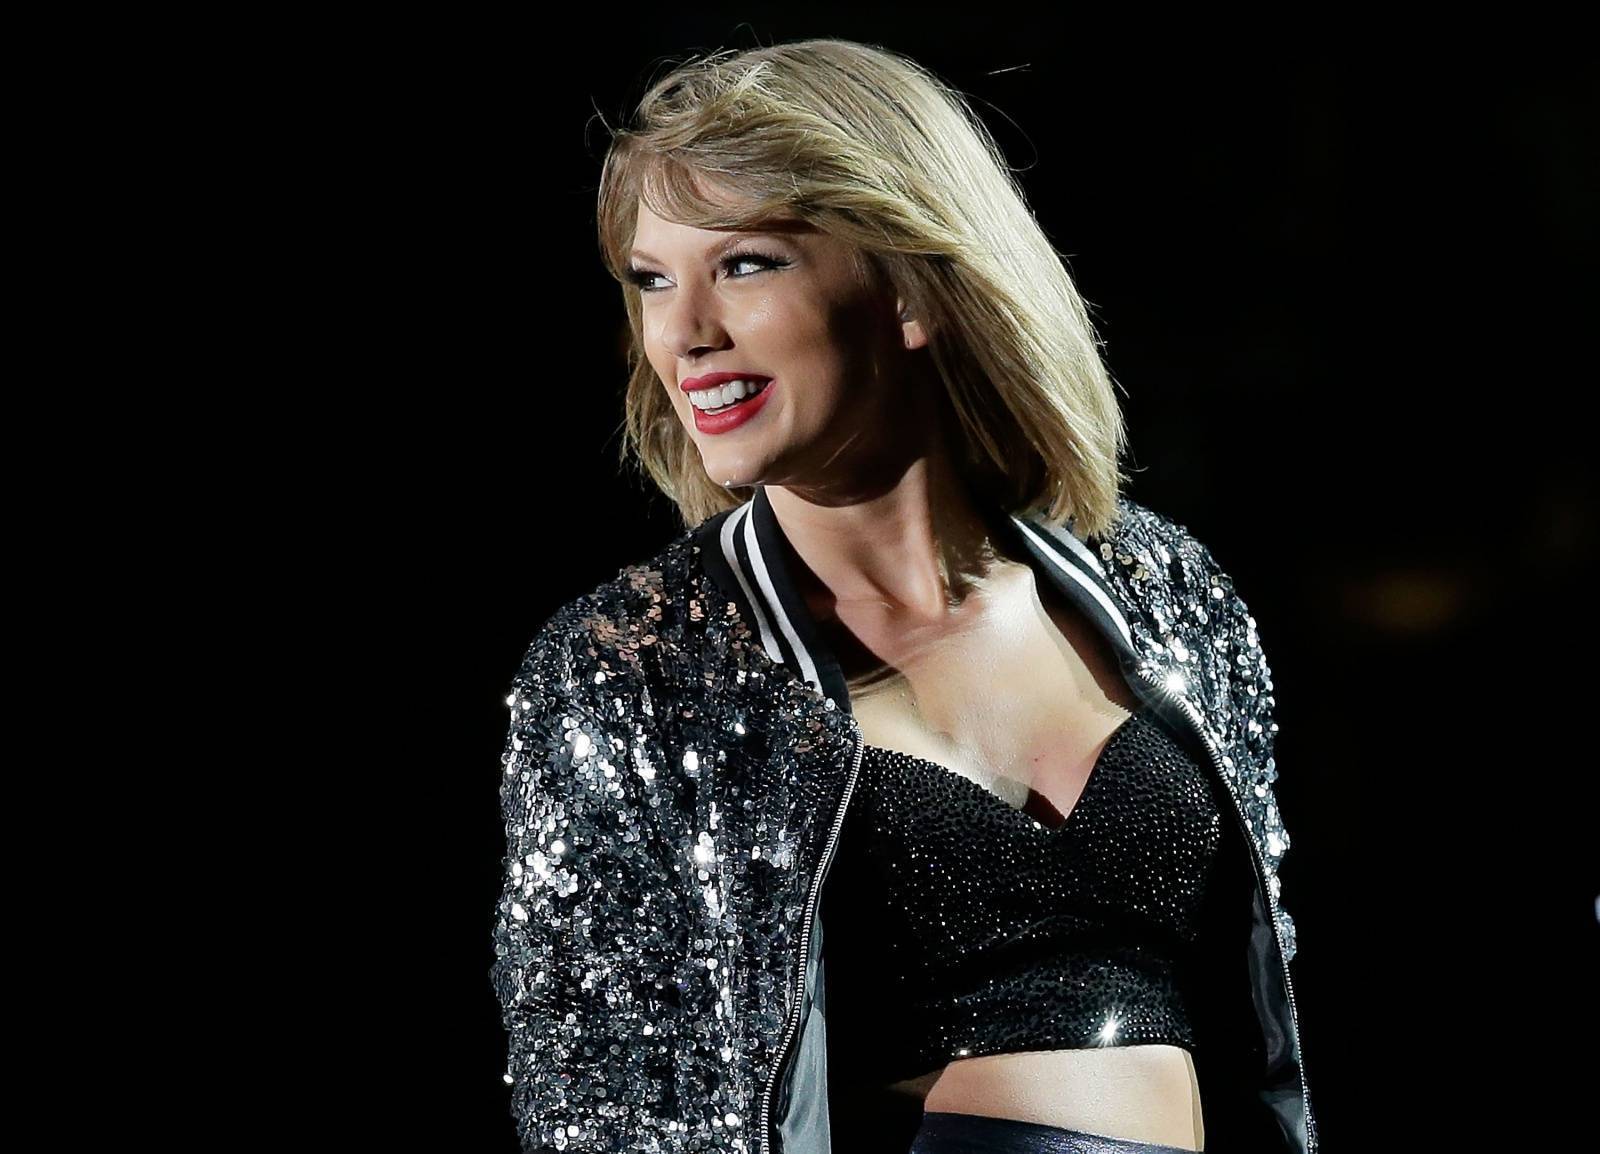 RECENZE: Rok 2020 z Taylor Swift smyl pompéznost popu. Novinka Evermore je pestřejší než mladší sestra Folklore